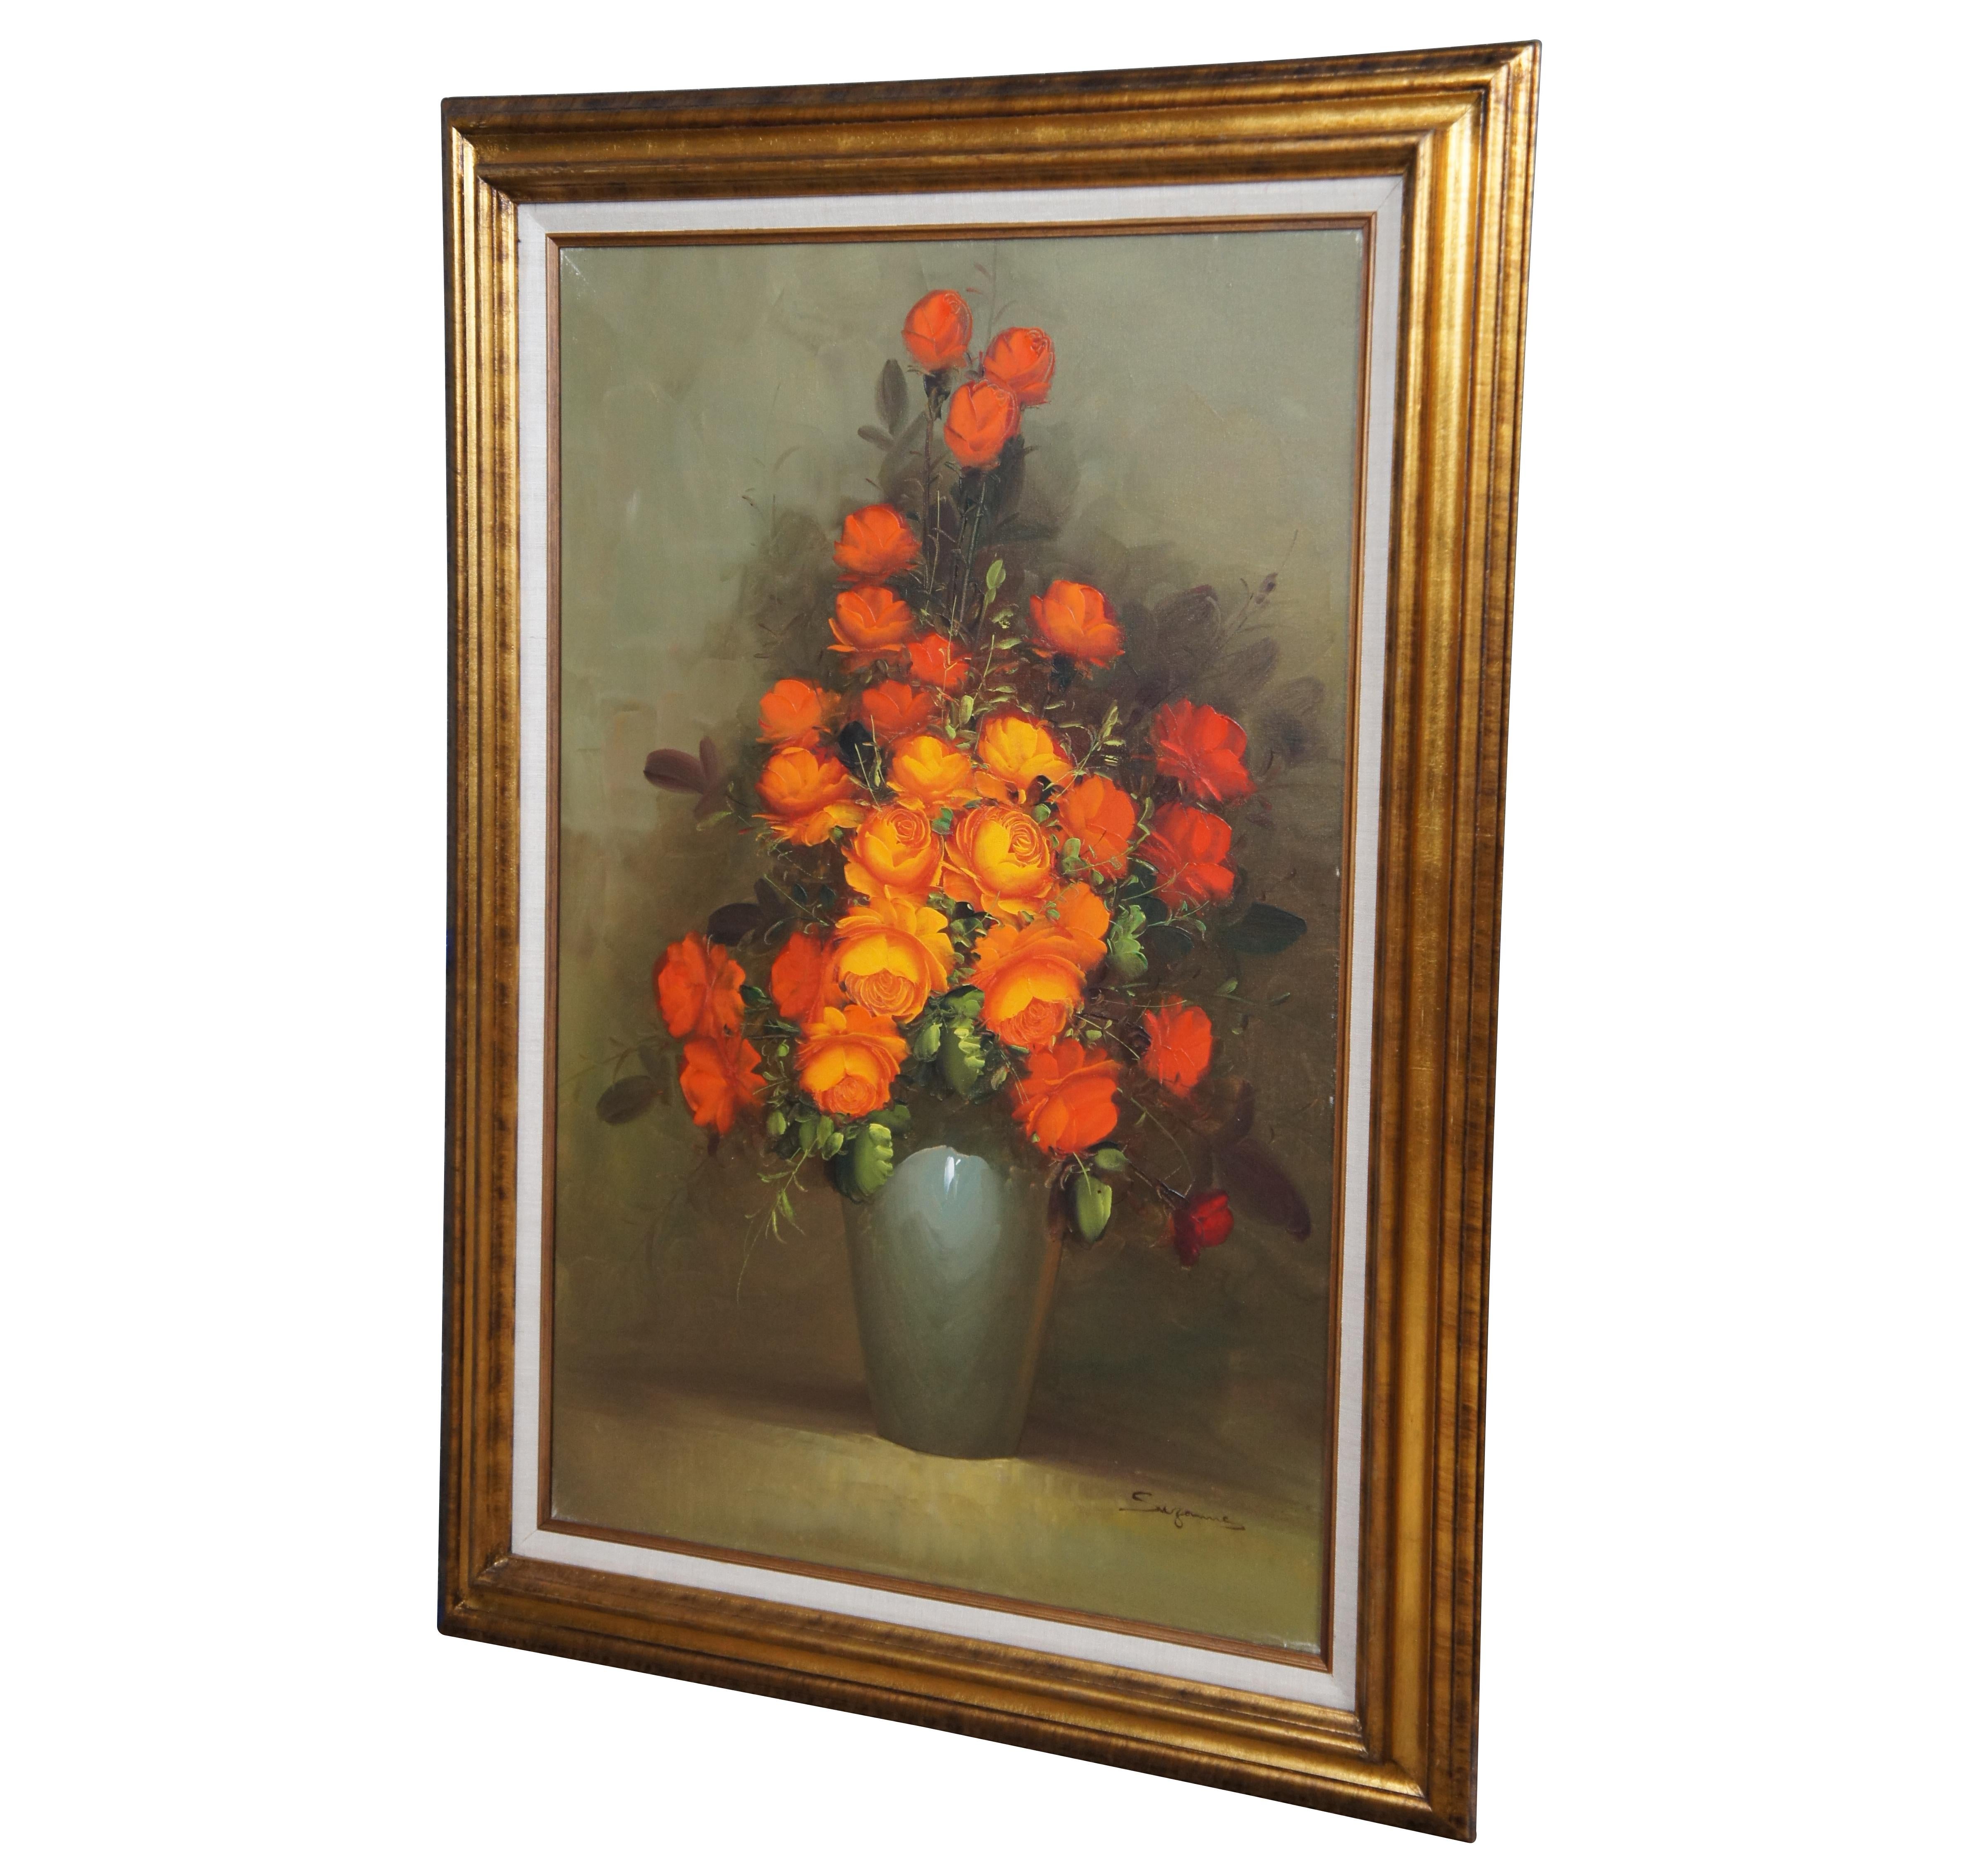 Nature morte vintage peinte à l'huile sur toile d'un bouquet de roses orange dans un vase bleu clair. Signé par l'artiste Suzanne en bas à gauche.

Dimensions

32